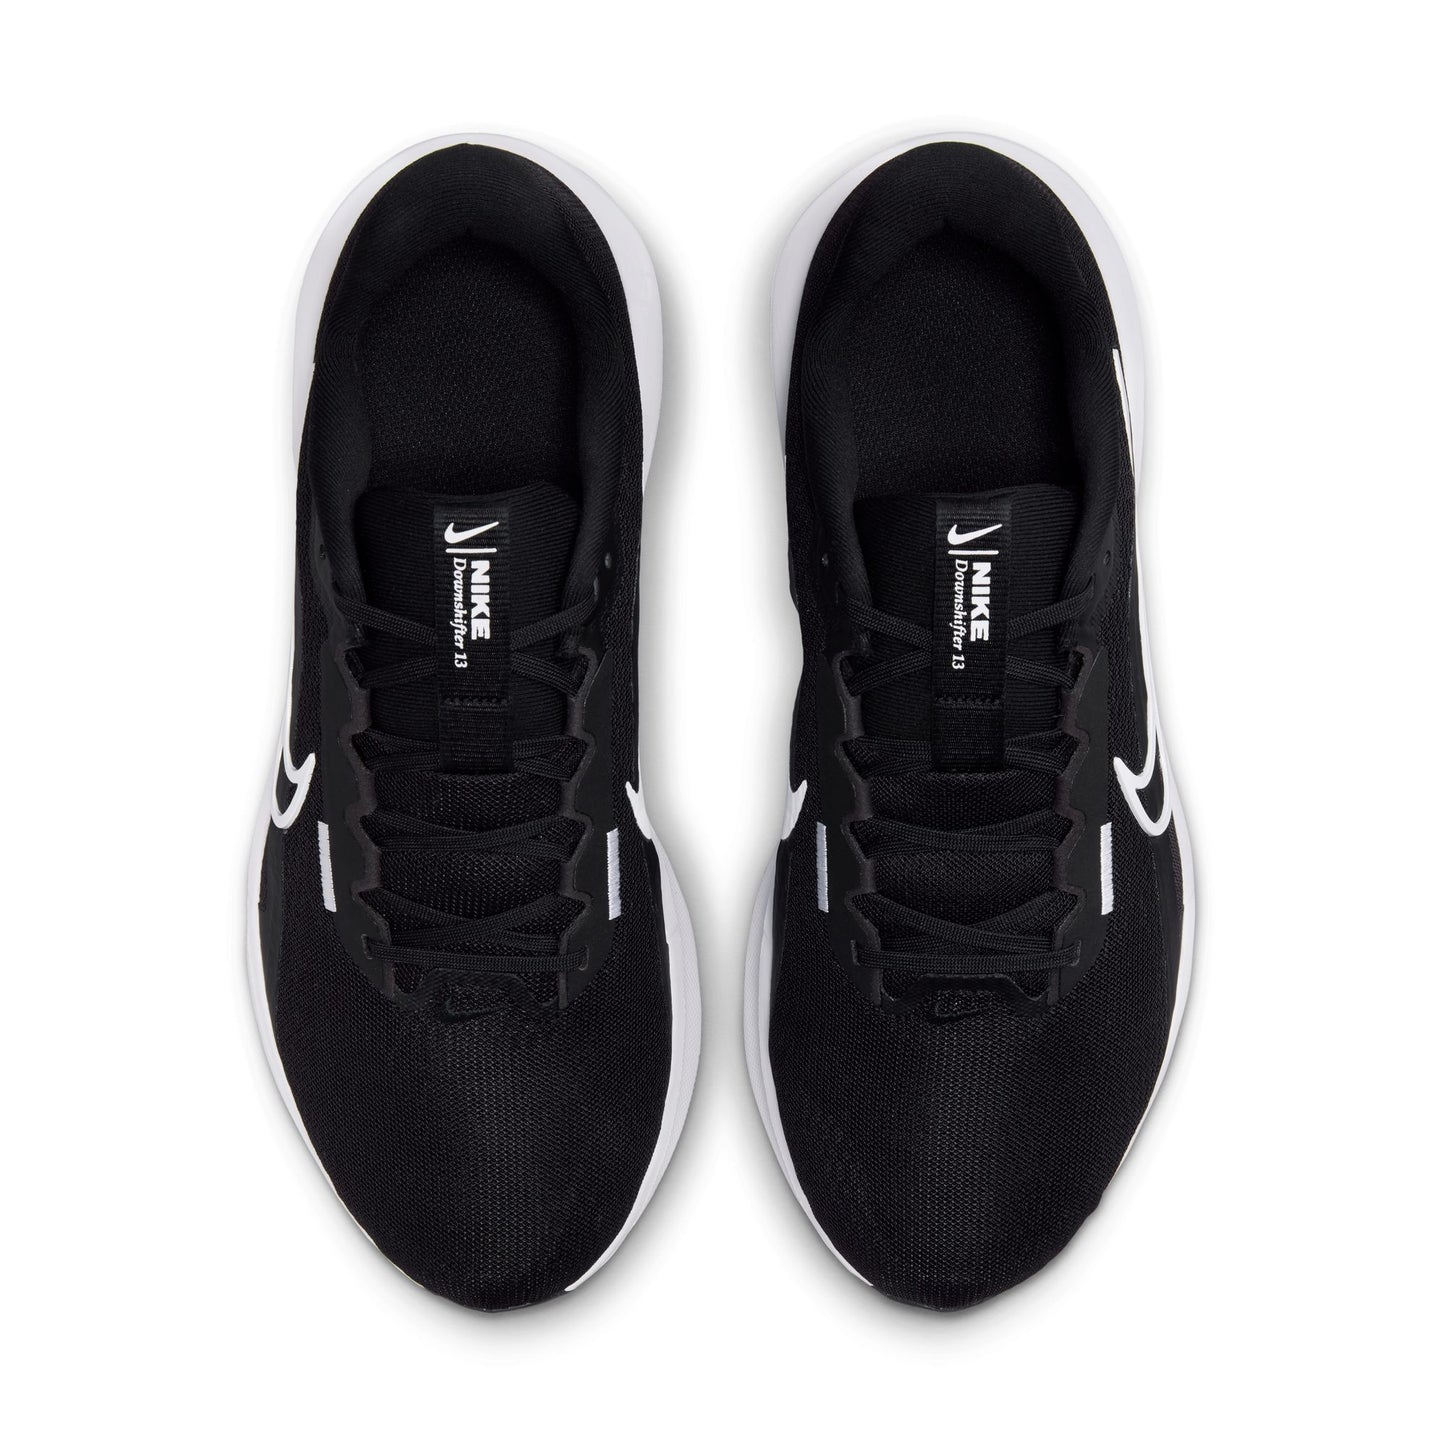 נעלי ספורט לגברים DOWNSHIFTER 13 WIDE בצבע שחור ולבן